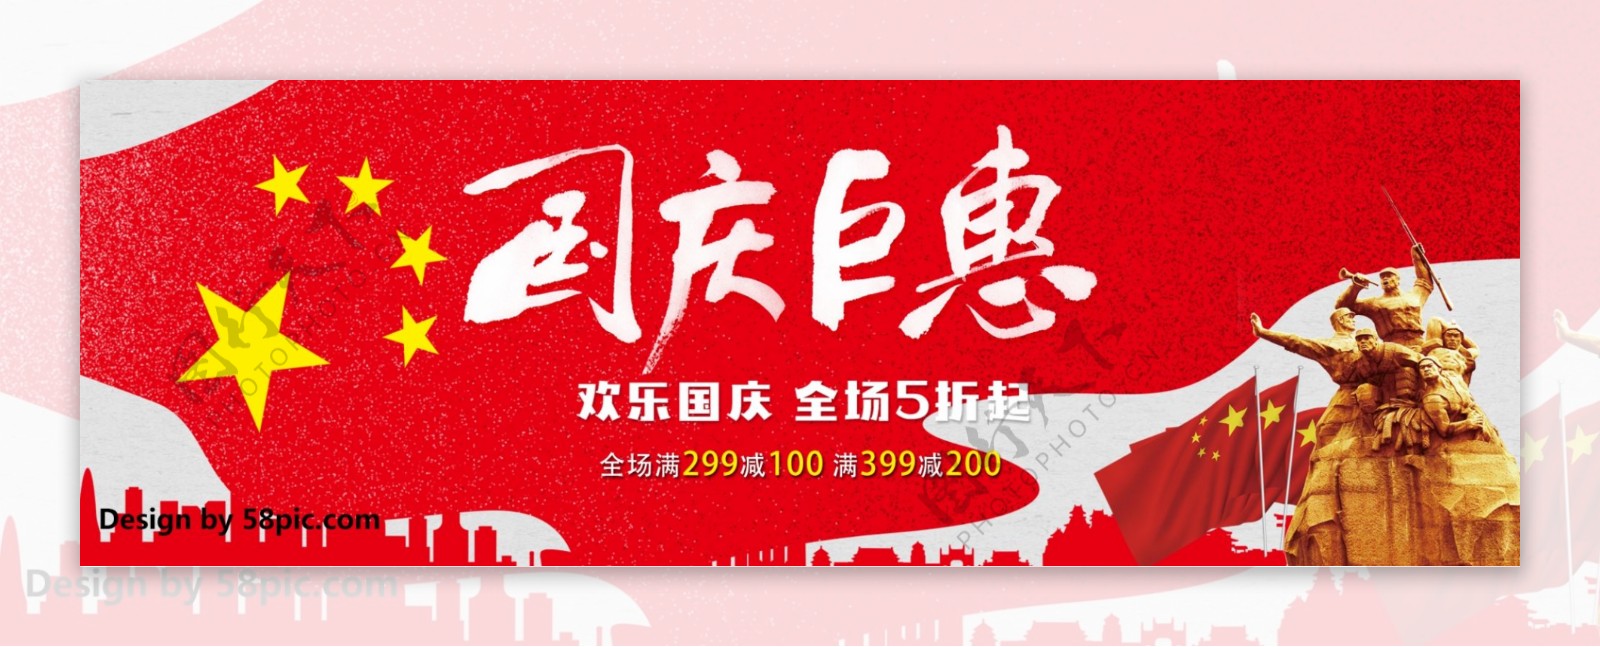 红色中式国旗国庆巨惠淘宝海报banner电商